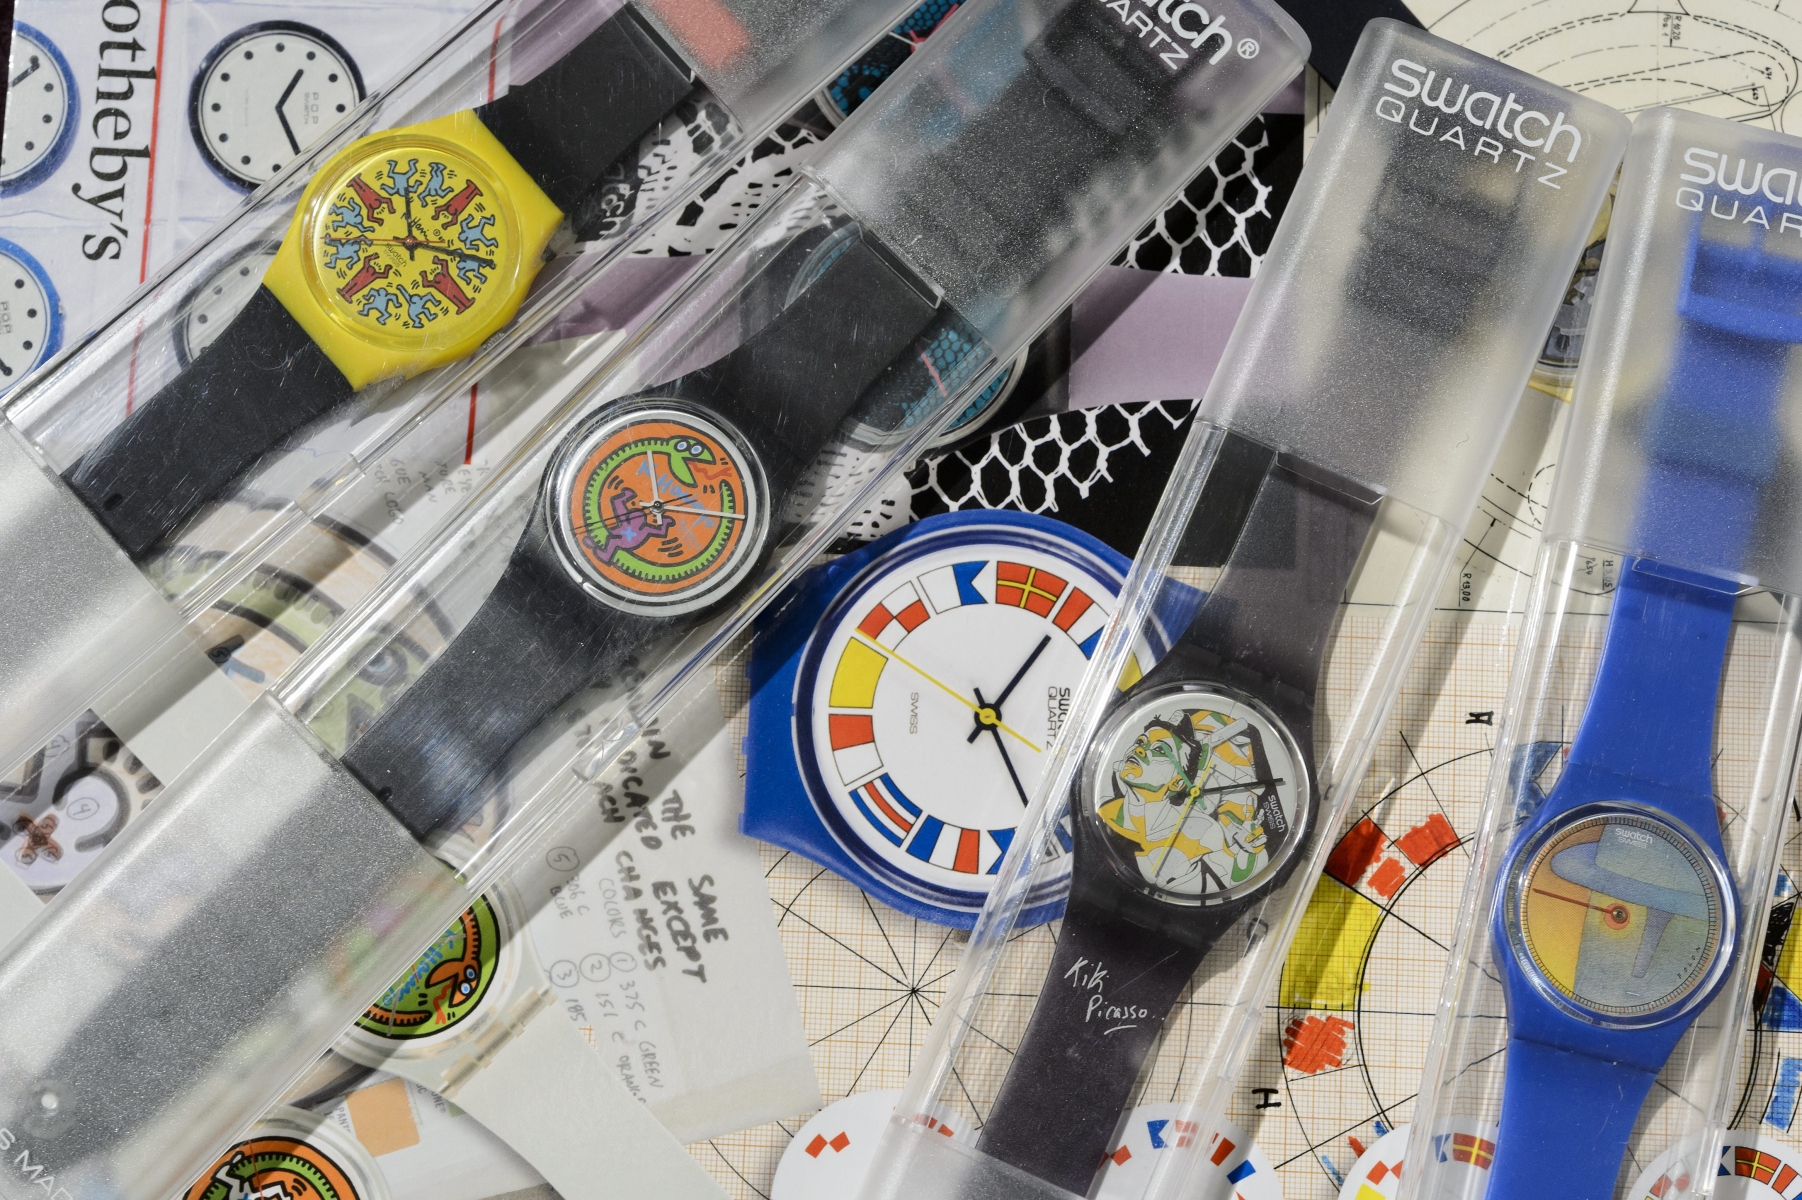 Mille montres, des prototypes, des croquis et autres objets illustrant la création de la Swatch ont été vendus ce mardi à Genève.